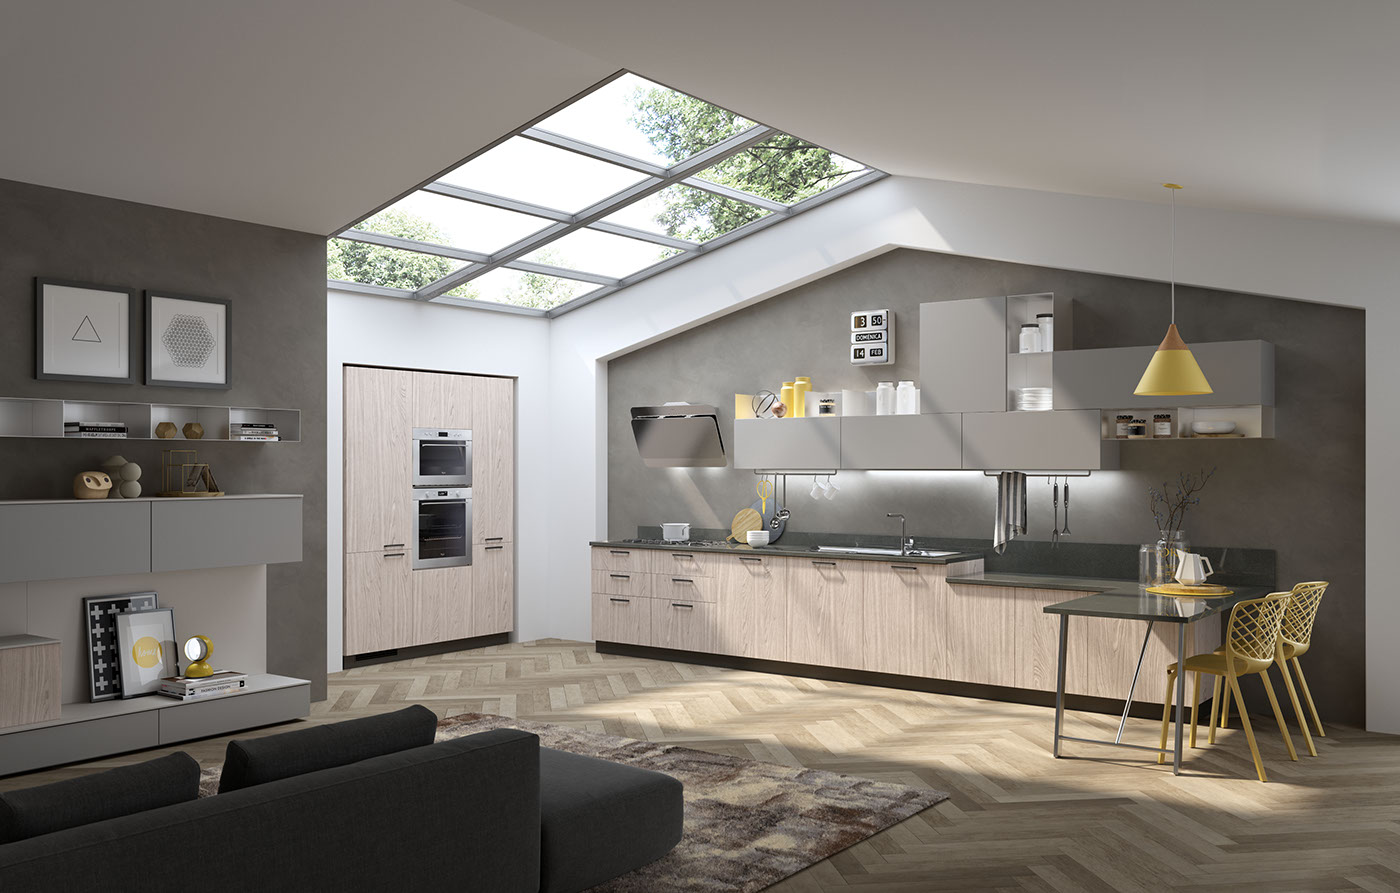 kitchen design inspiration rendering arion render design 2018 Interior living style 2018 urban kitchen